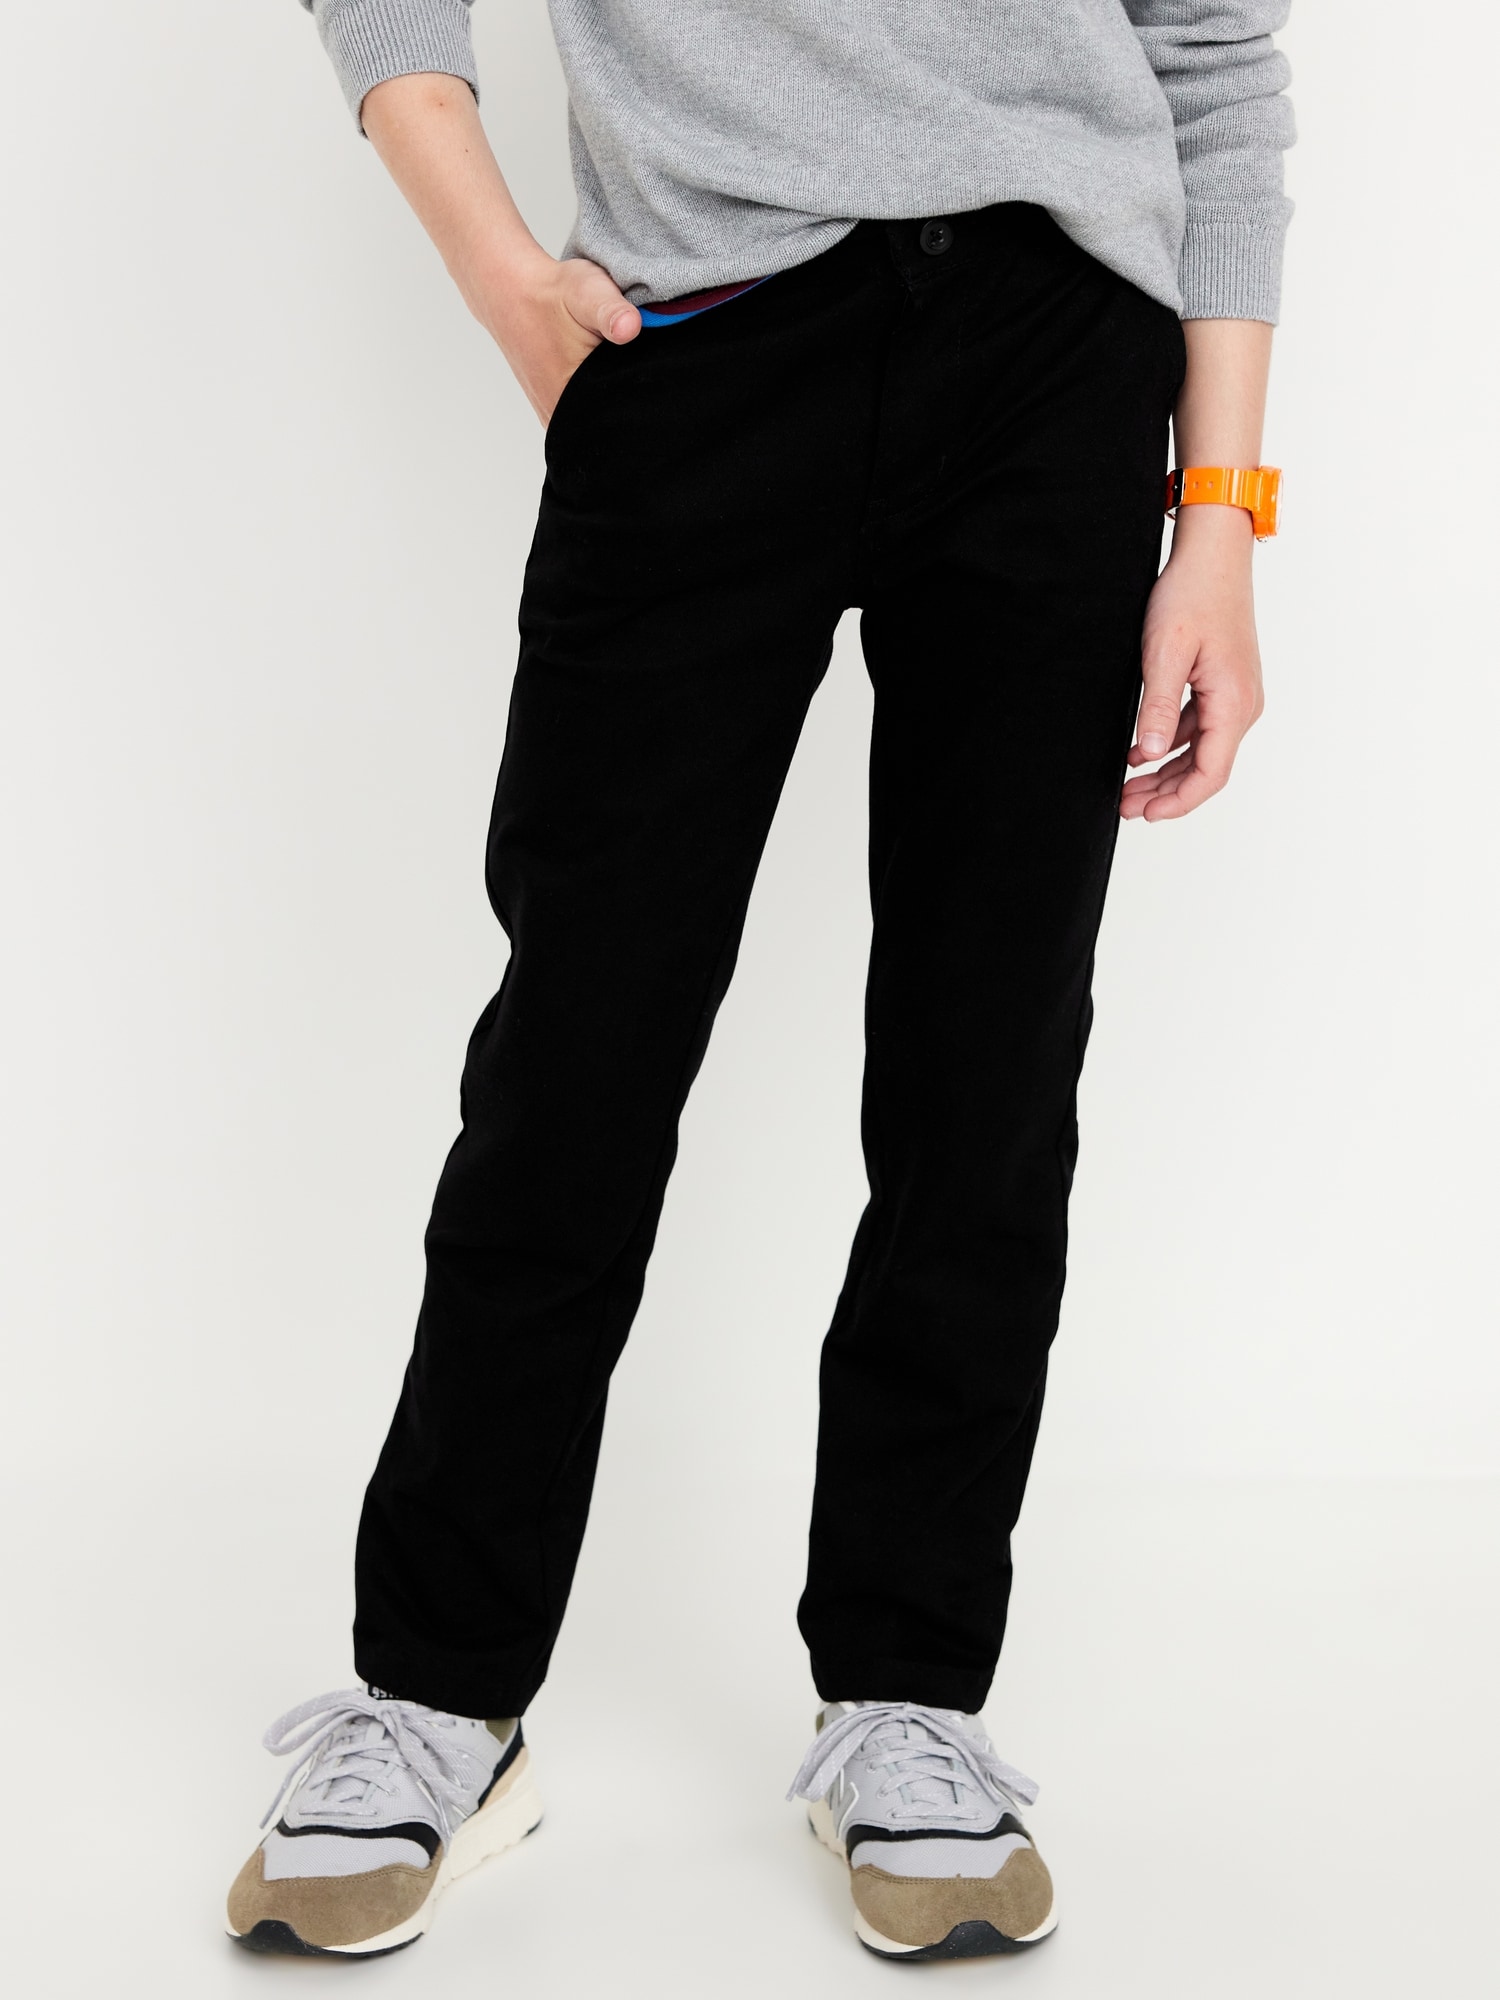 Slim School Uniform Chino Pants for Boys